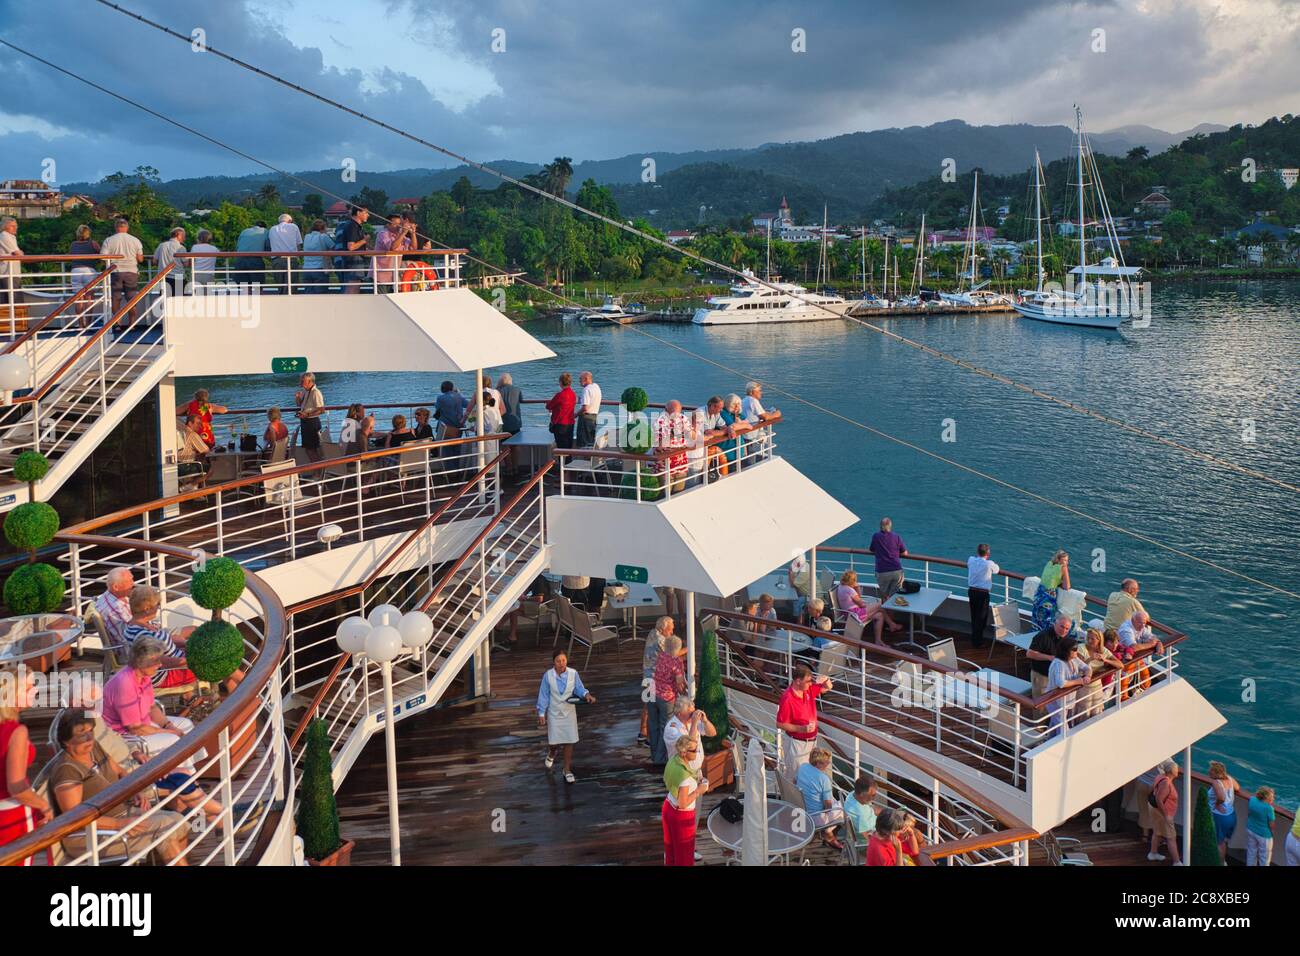 Die Leute am Geländer eines Kreuzfahrtschiffes beobachten, wie das Schiff mit anderen bereits festfahrenden Booten in Jamaika, der Karibik, in den Hafen kommt Stockfoto